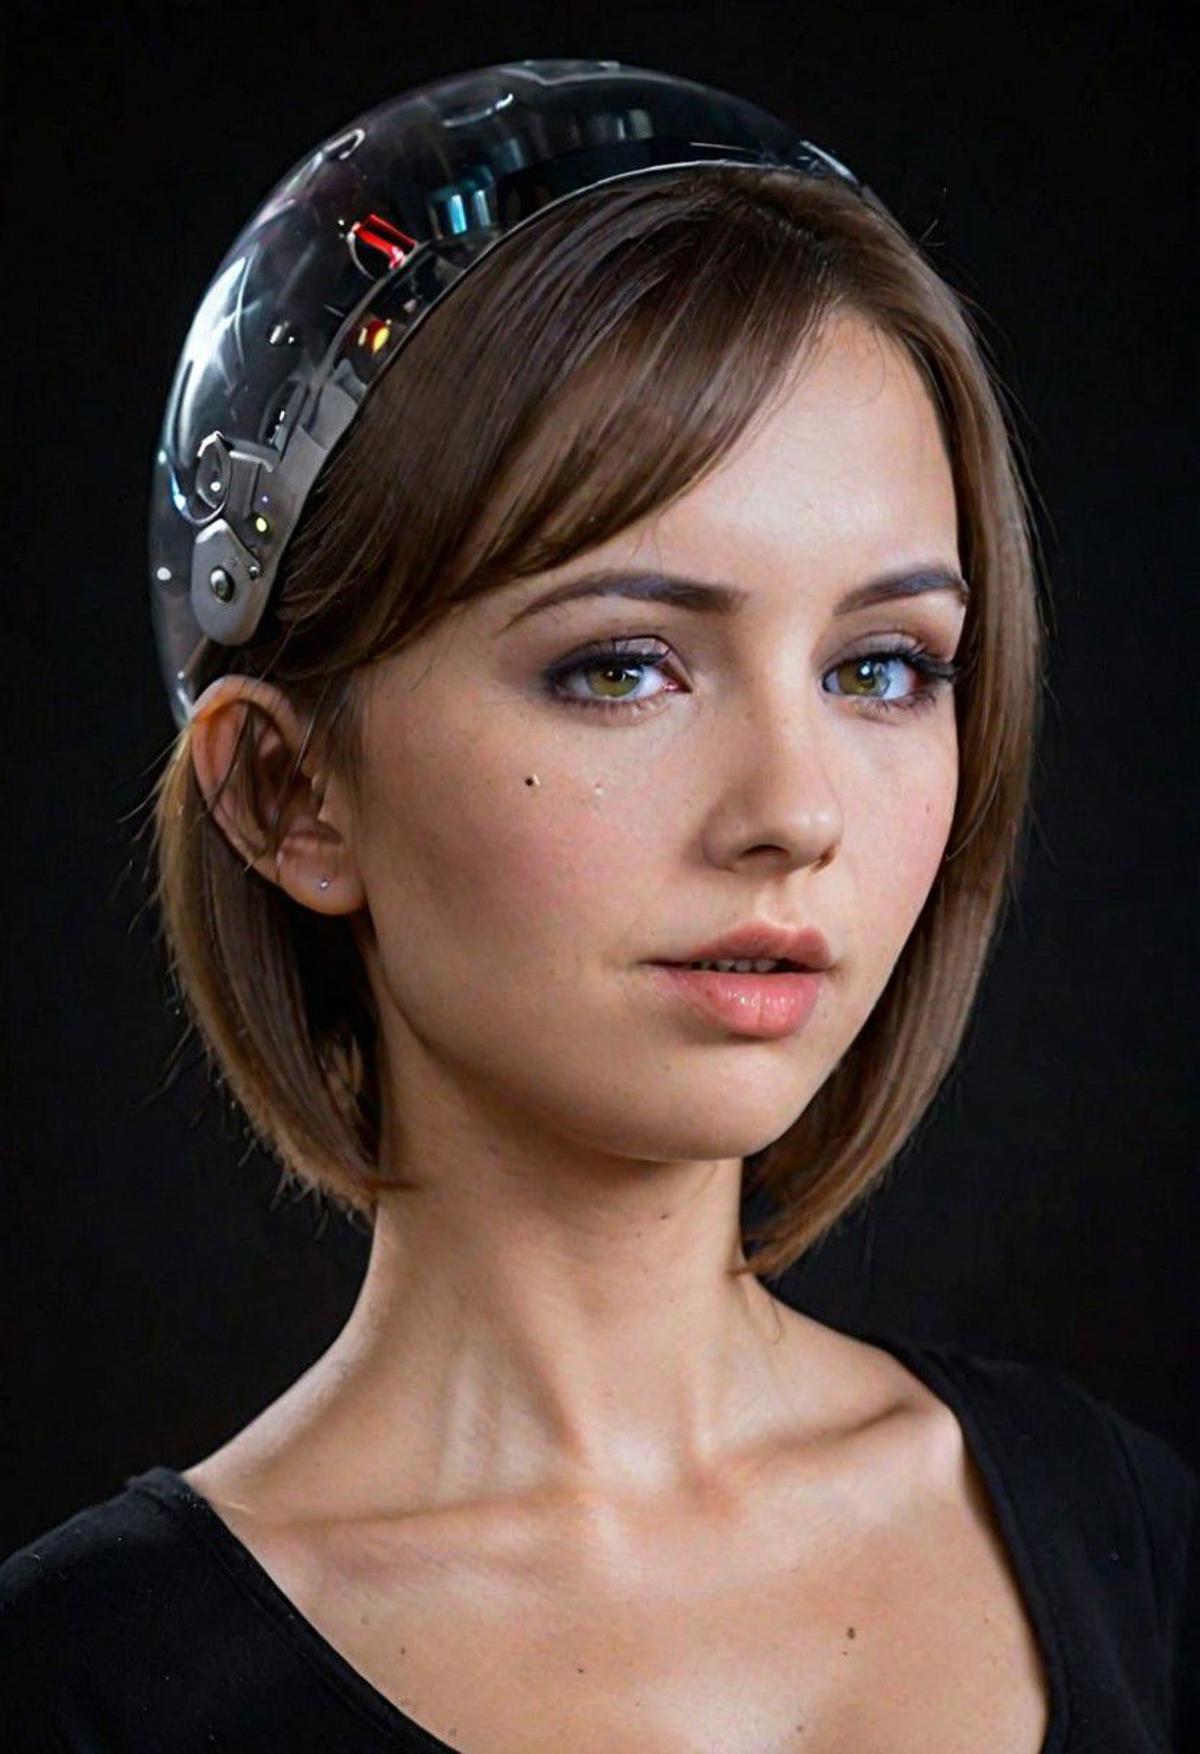 AI model image by Cyberpunkk